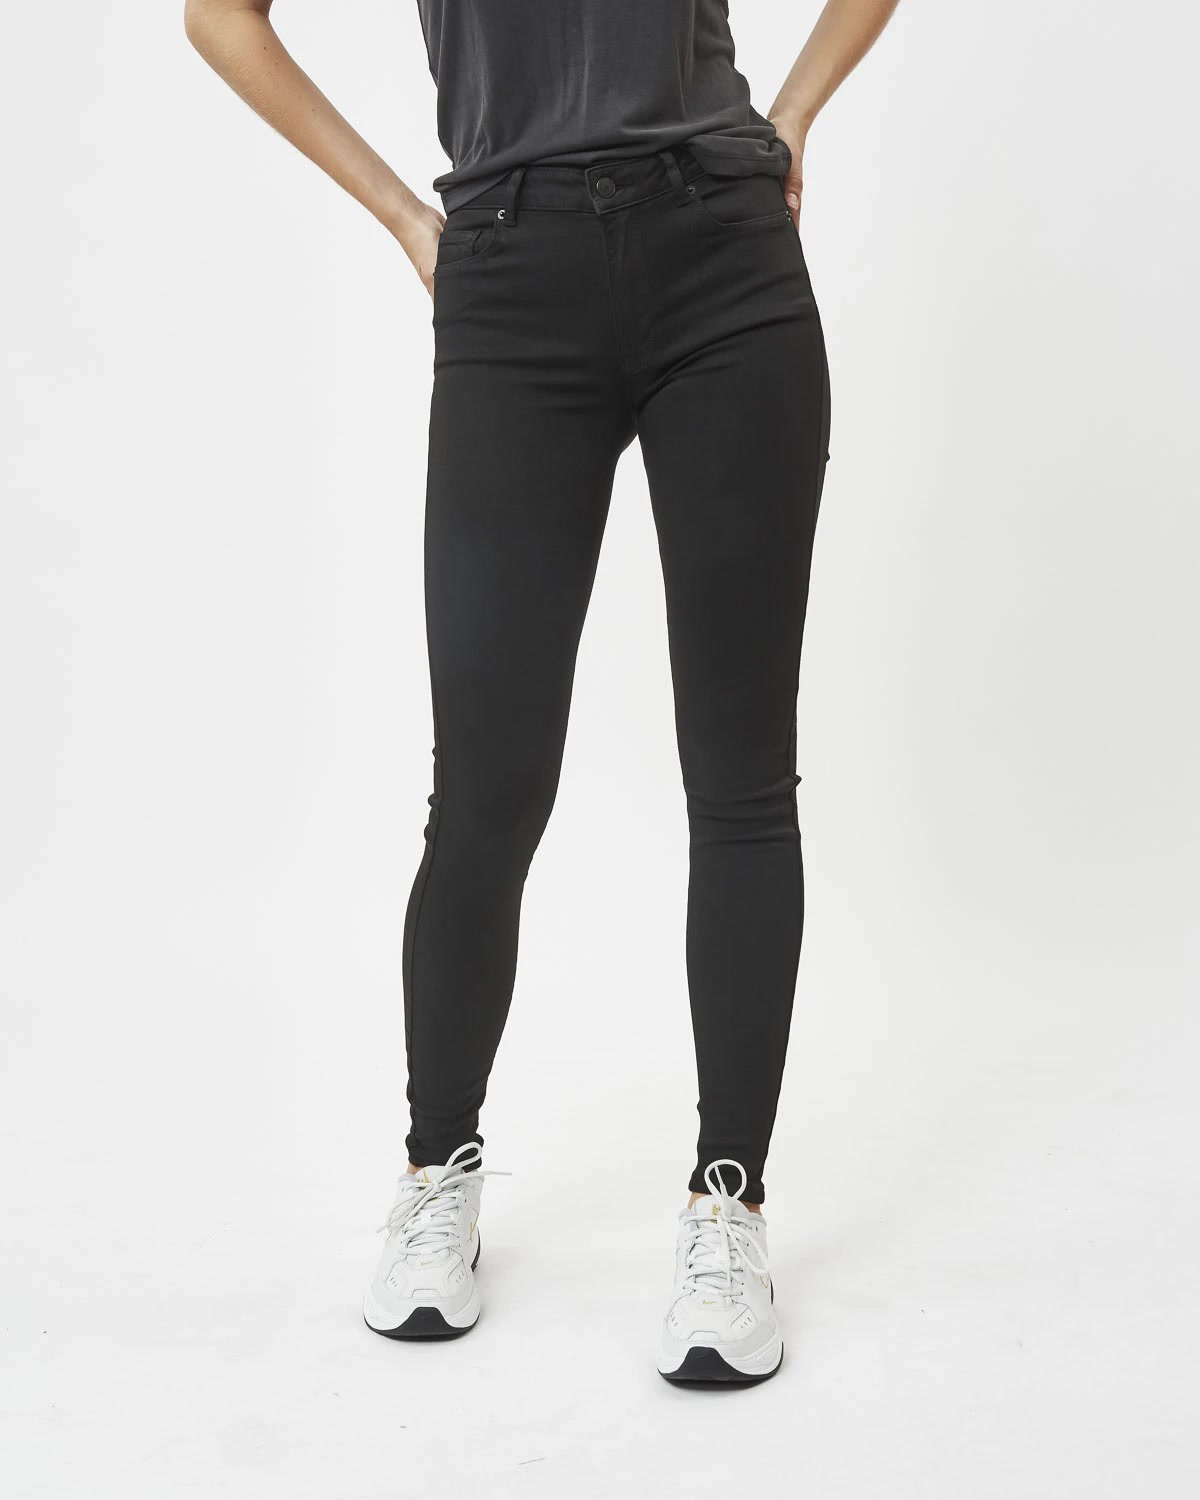 Minimum - Lotus NW M308 Hyperform Jeans #Color_Black